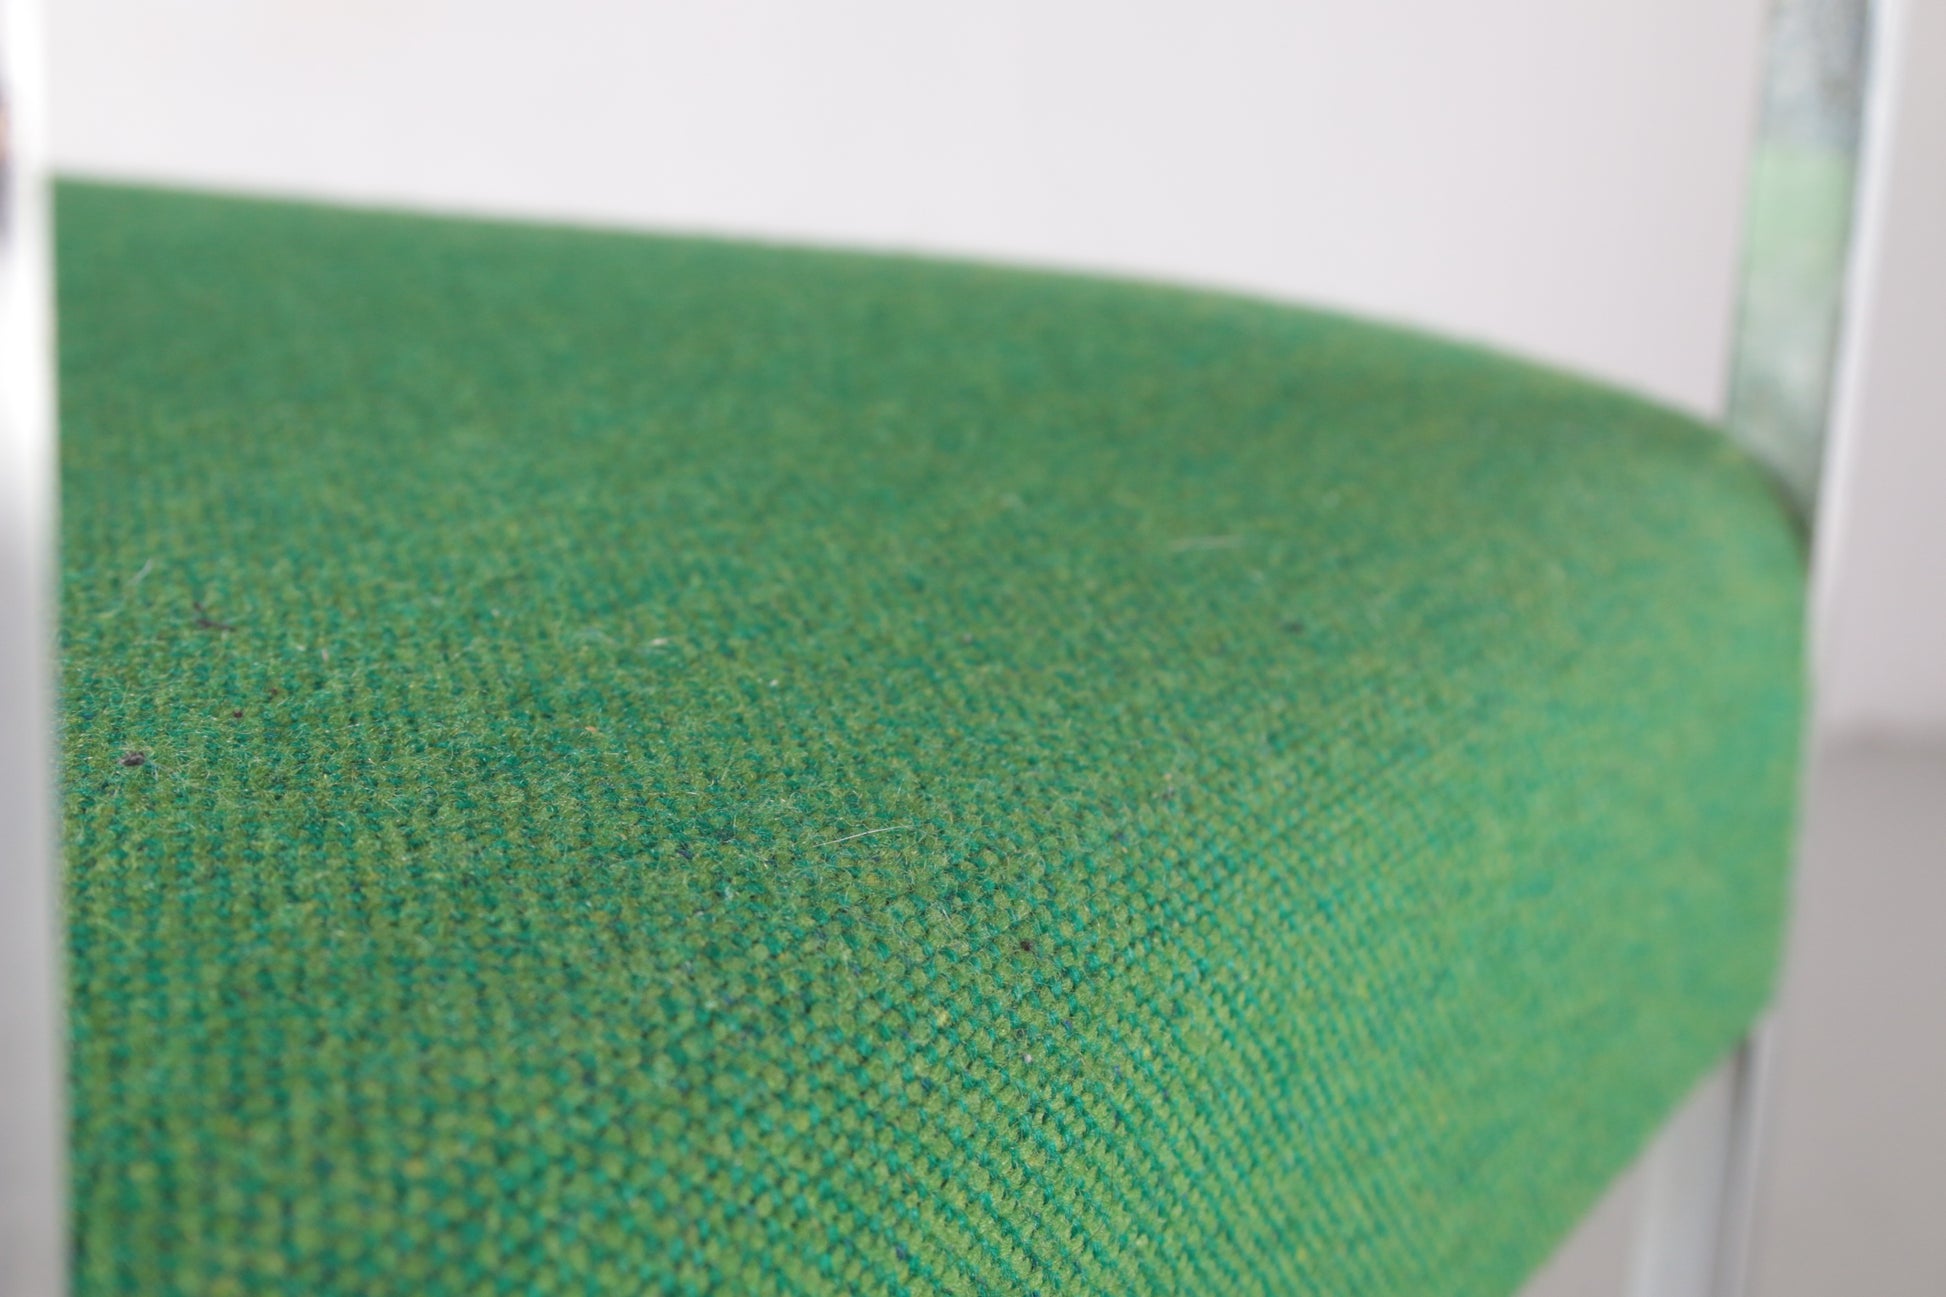 Vintage Groene Armleuning stoel/Bureau stoel,jaren60 detail van het stof